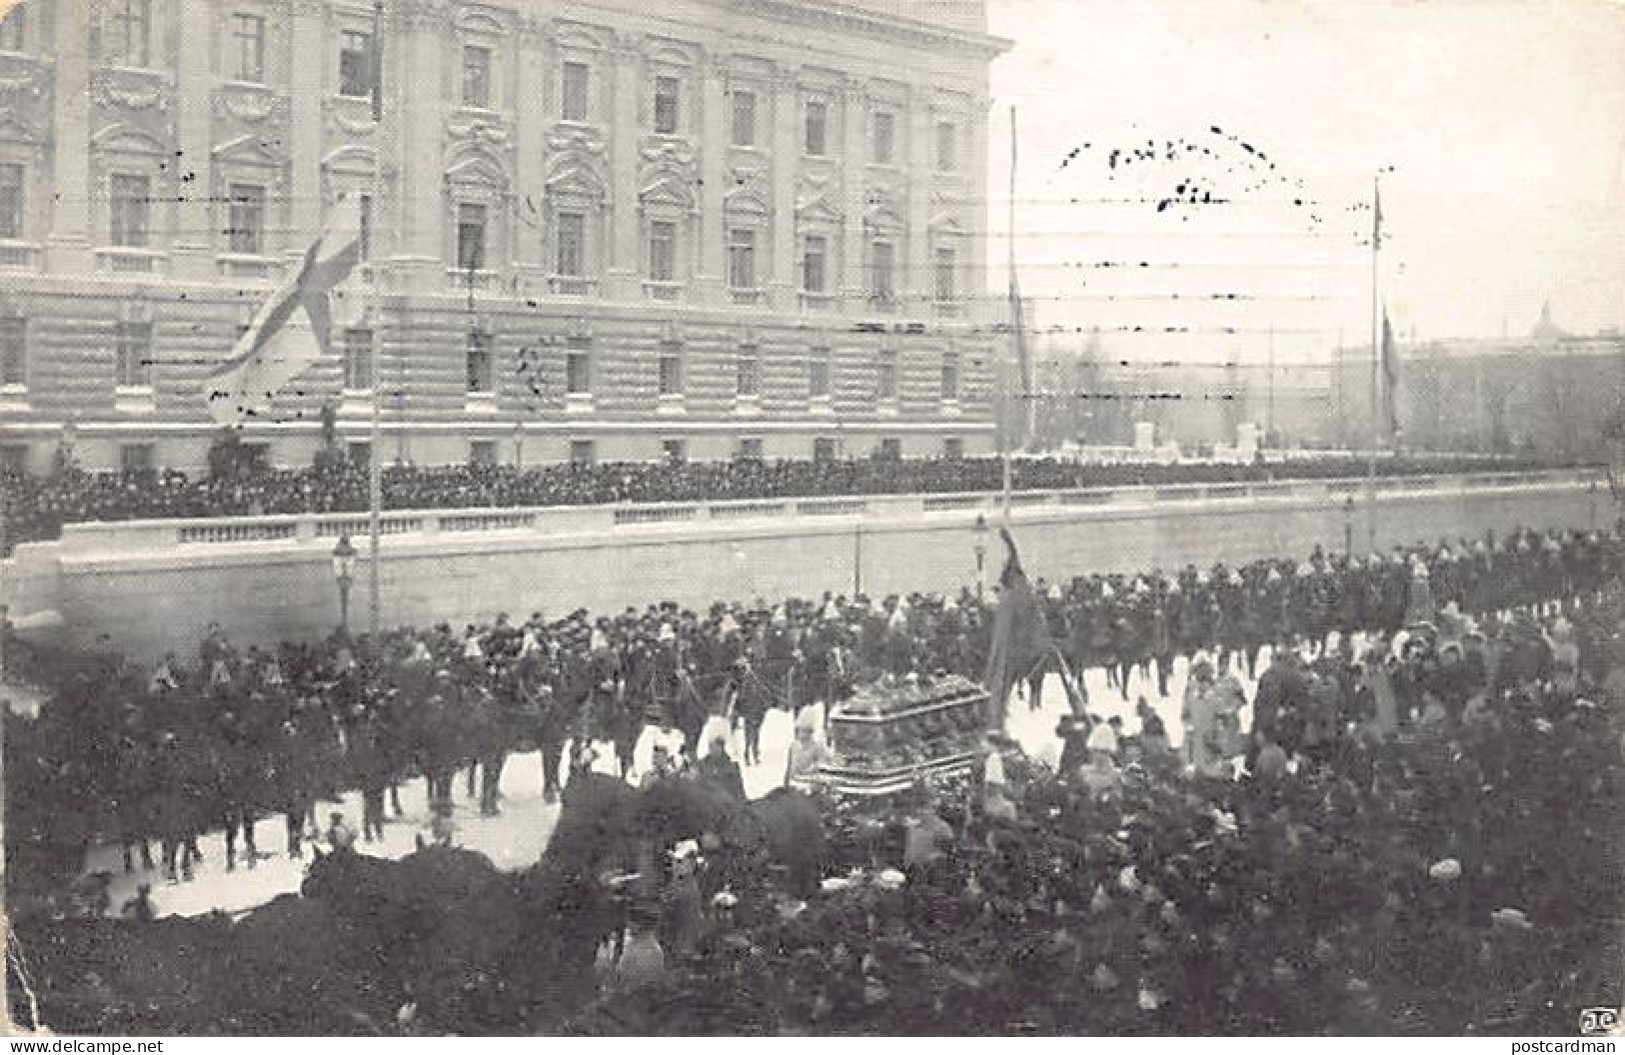 SVERIGE Sweden - STOCKHOLM - Konung Oscar II's Begravning Den 19 Dec. 1907 - King Oscar II's Funeral On 19 Dec. 1907 - P - Schweden